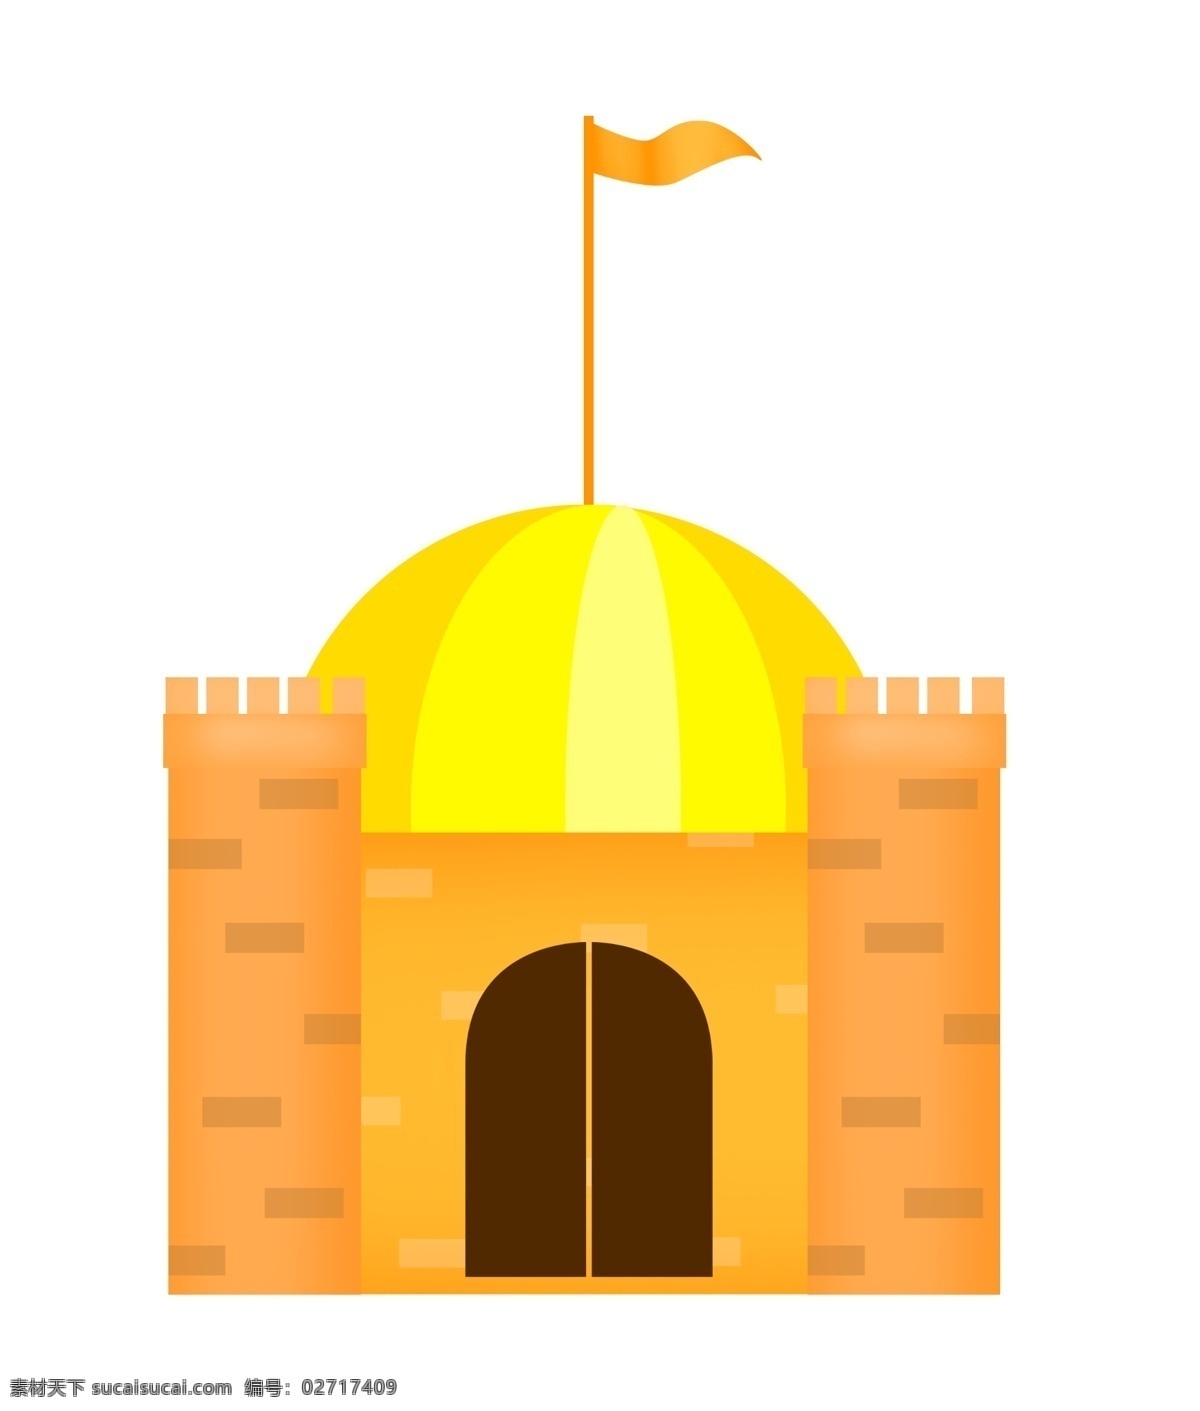 卡通 城堡 建筑 插画 黄色城堡 黄色小旗插画 卡通城堡 公主城堡 堡 童话城堡 迪士尼城堡 卡通建筑